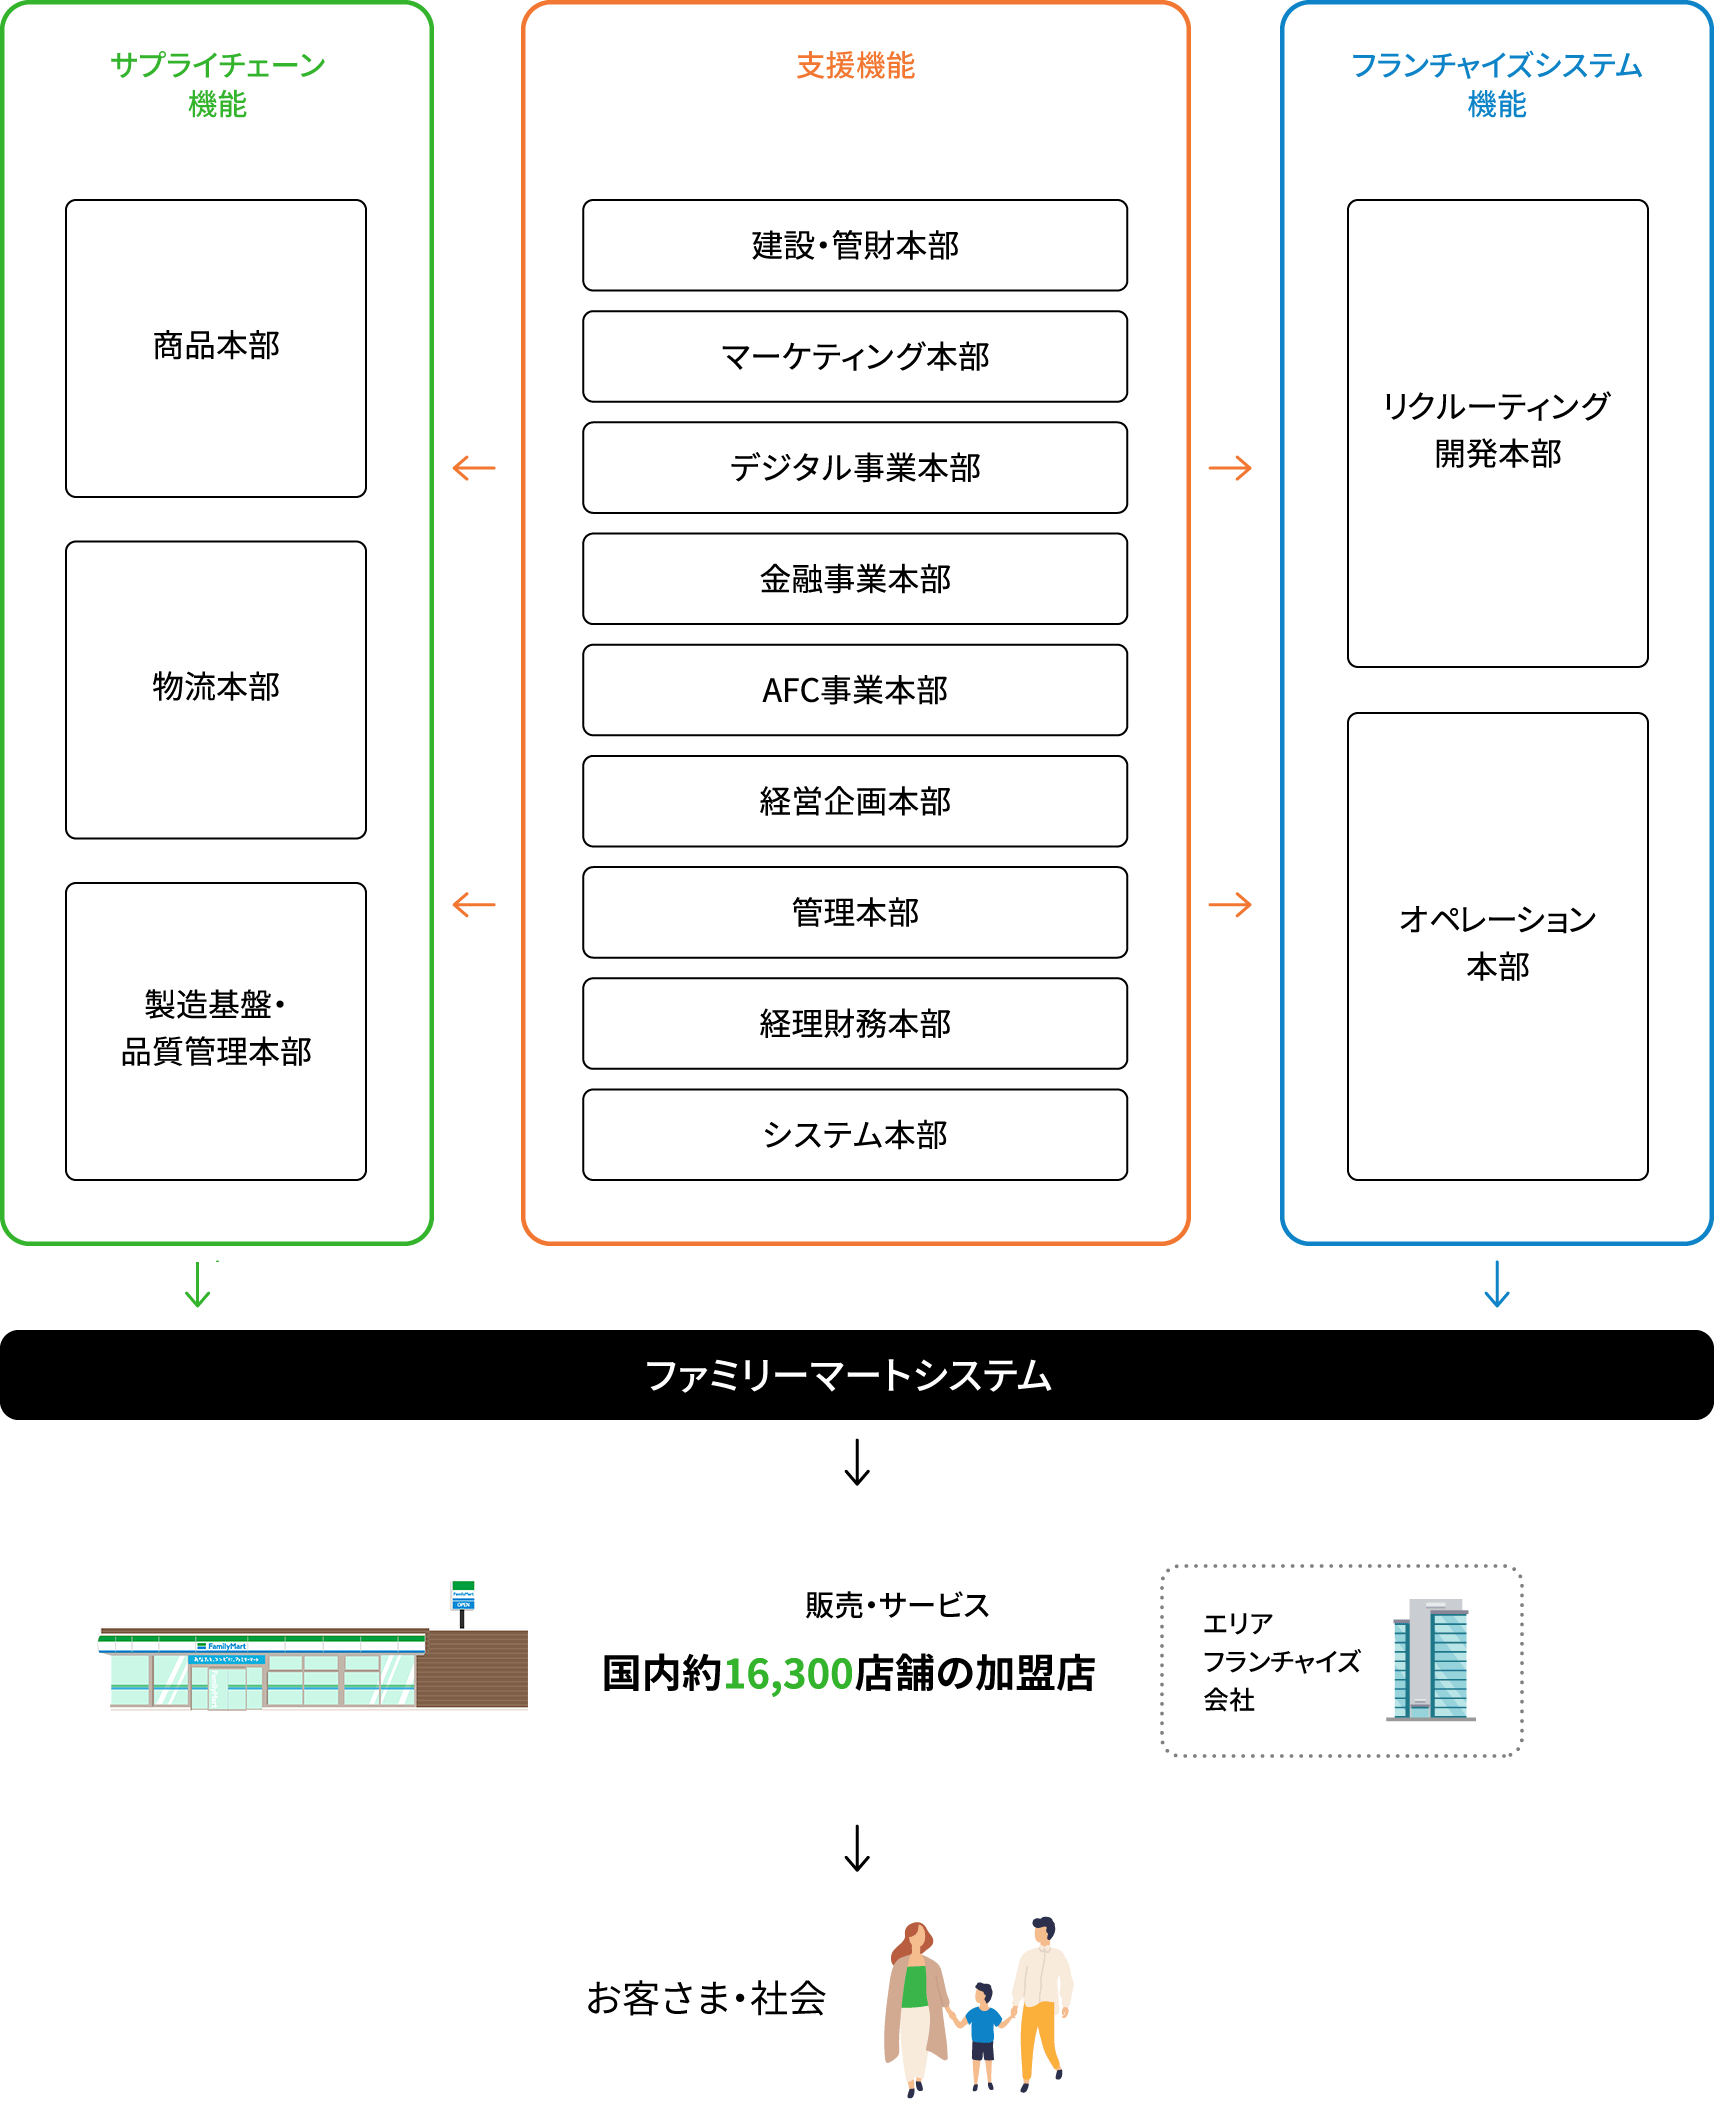 ファミリーマートの組織構造